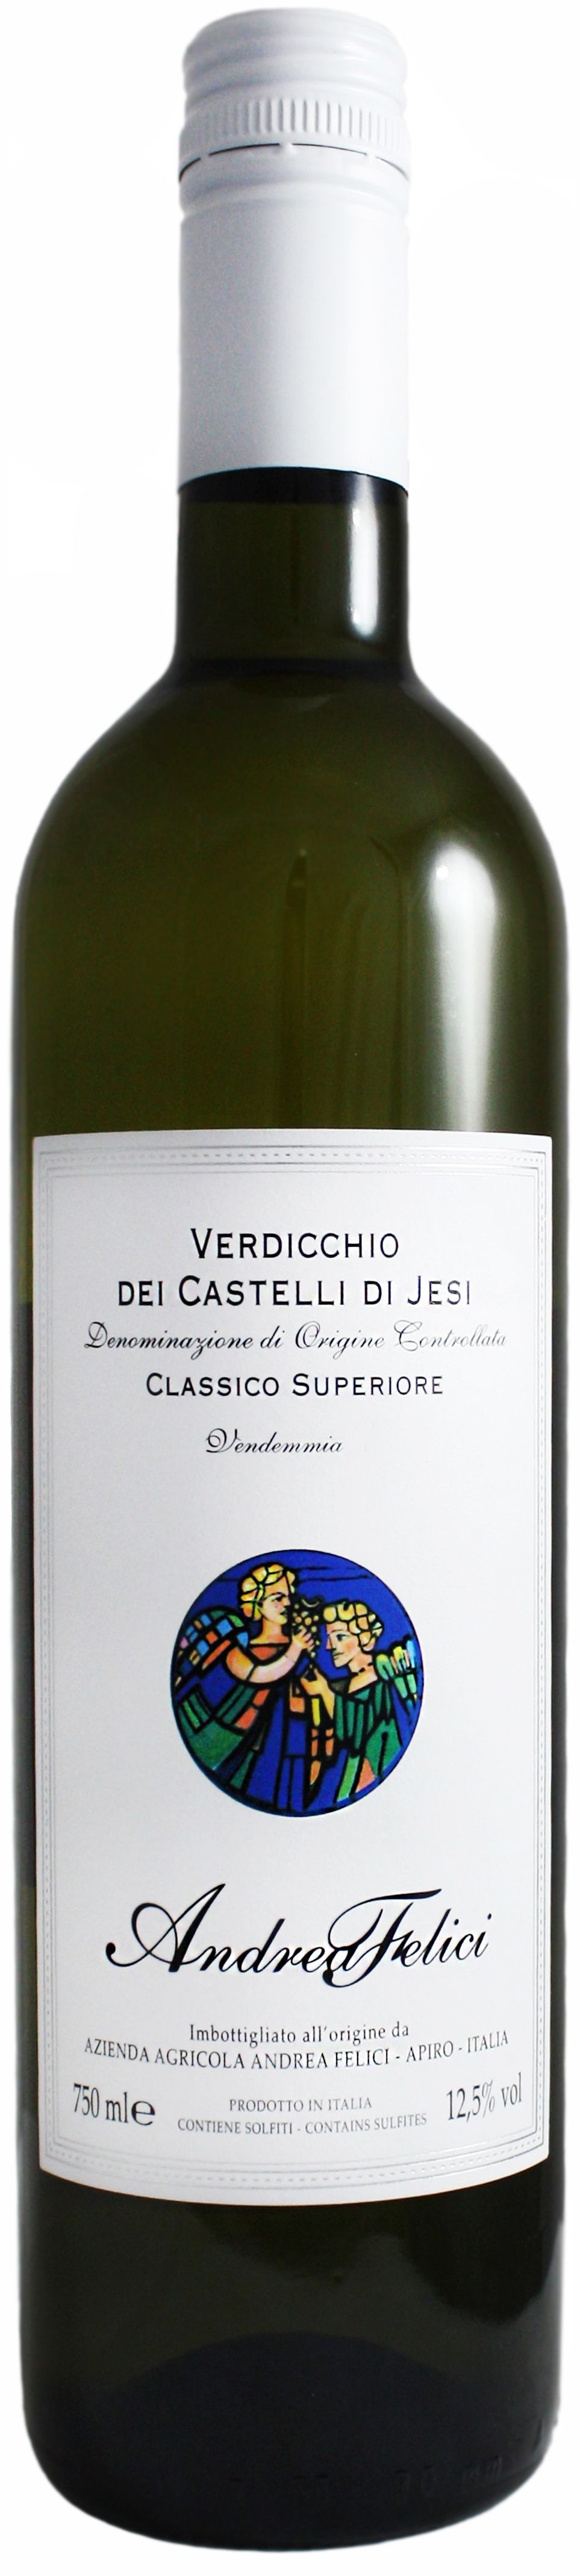 Andrea Felici, Verdicchio Dei Castelli Di Jesi Classico Superiore, 2018